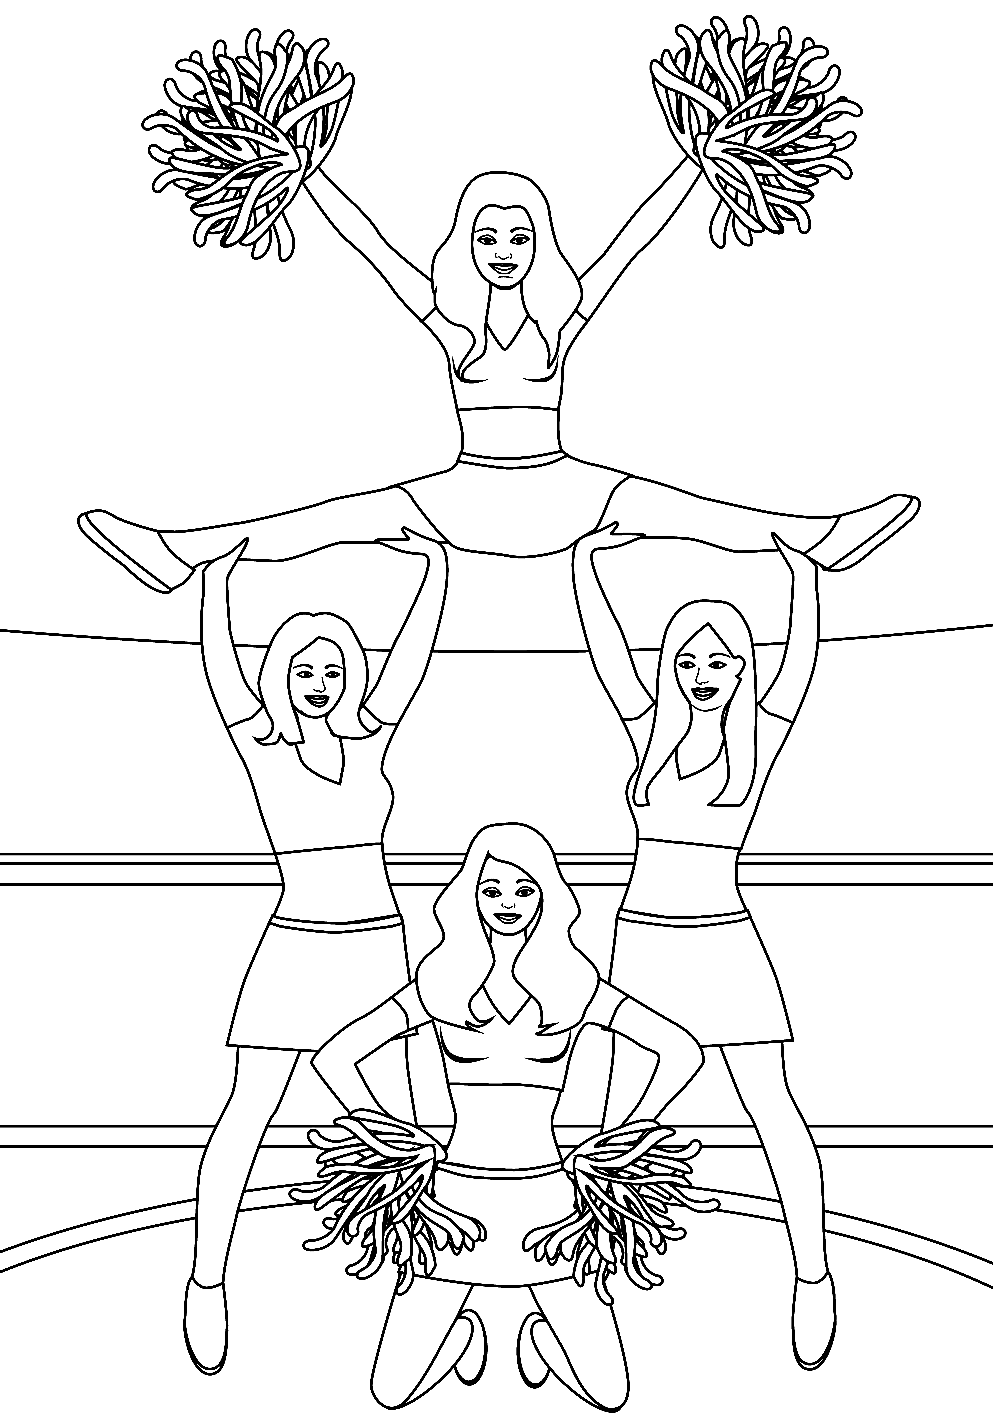 Pagina da colorare stampabile della cheerleader della squadra